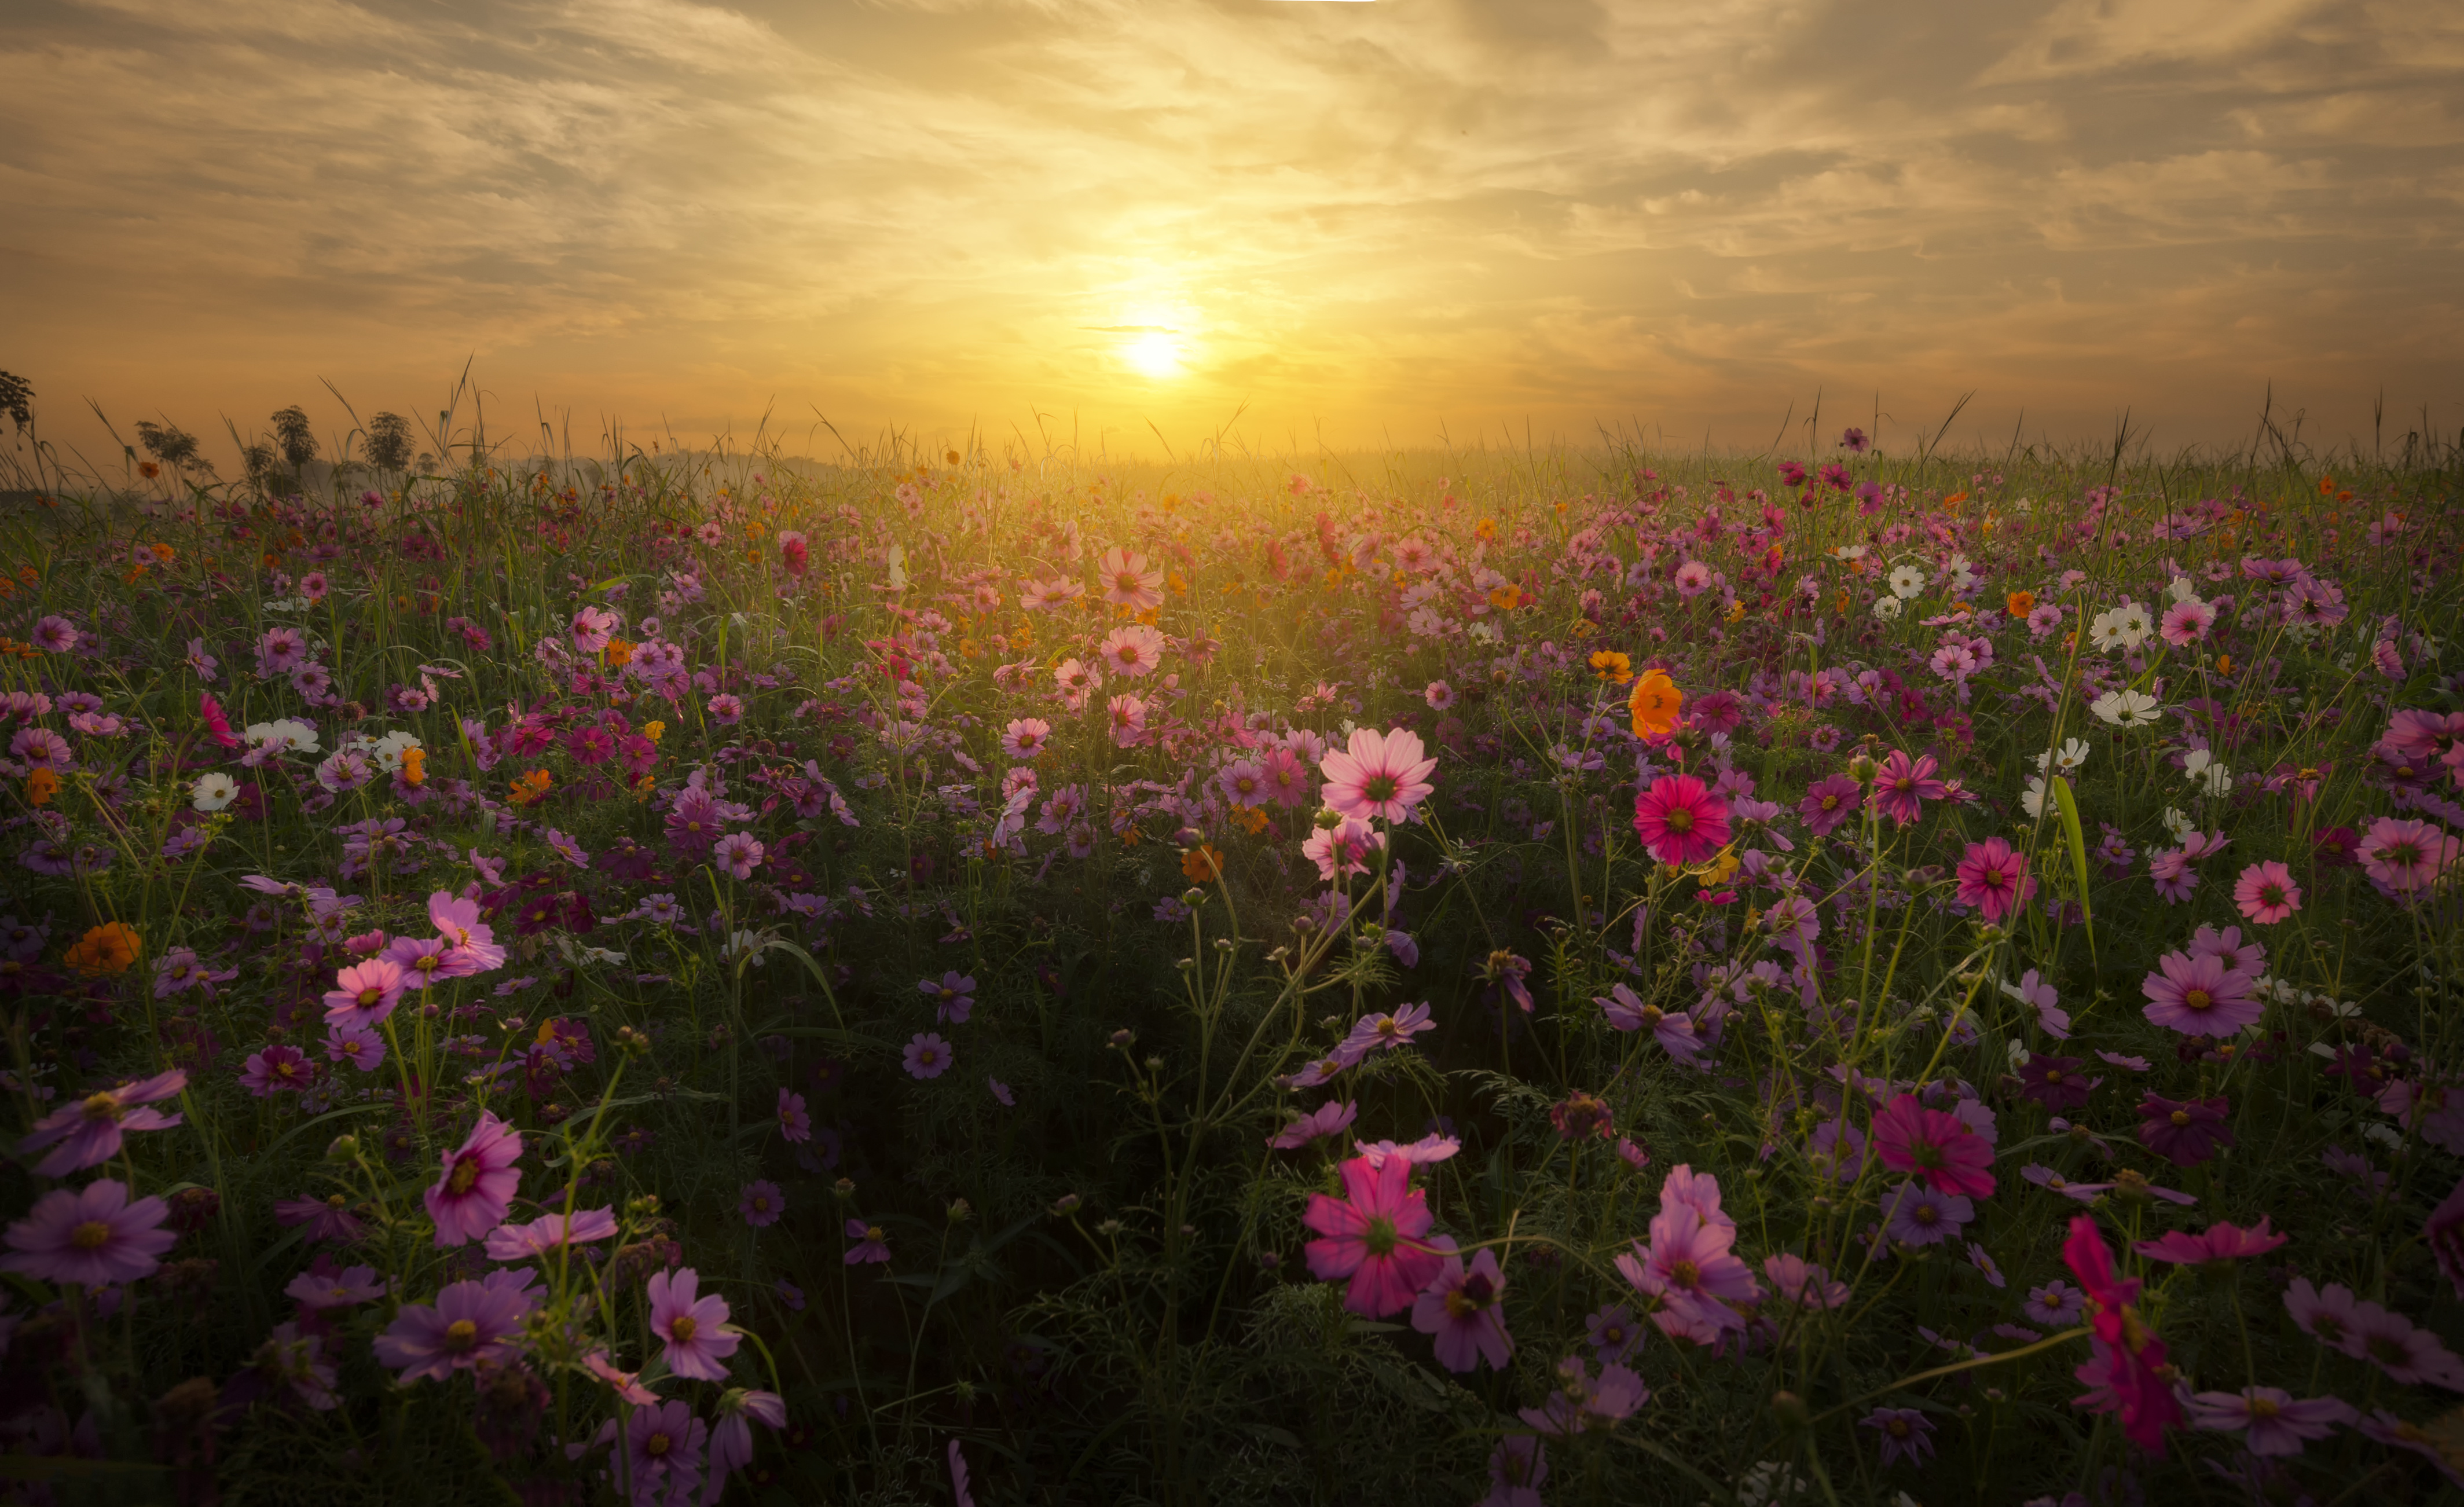 تصویر استوک زیبا از گلستان مملو از گل های رنگی و غروب آفتاب